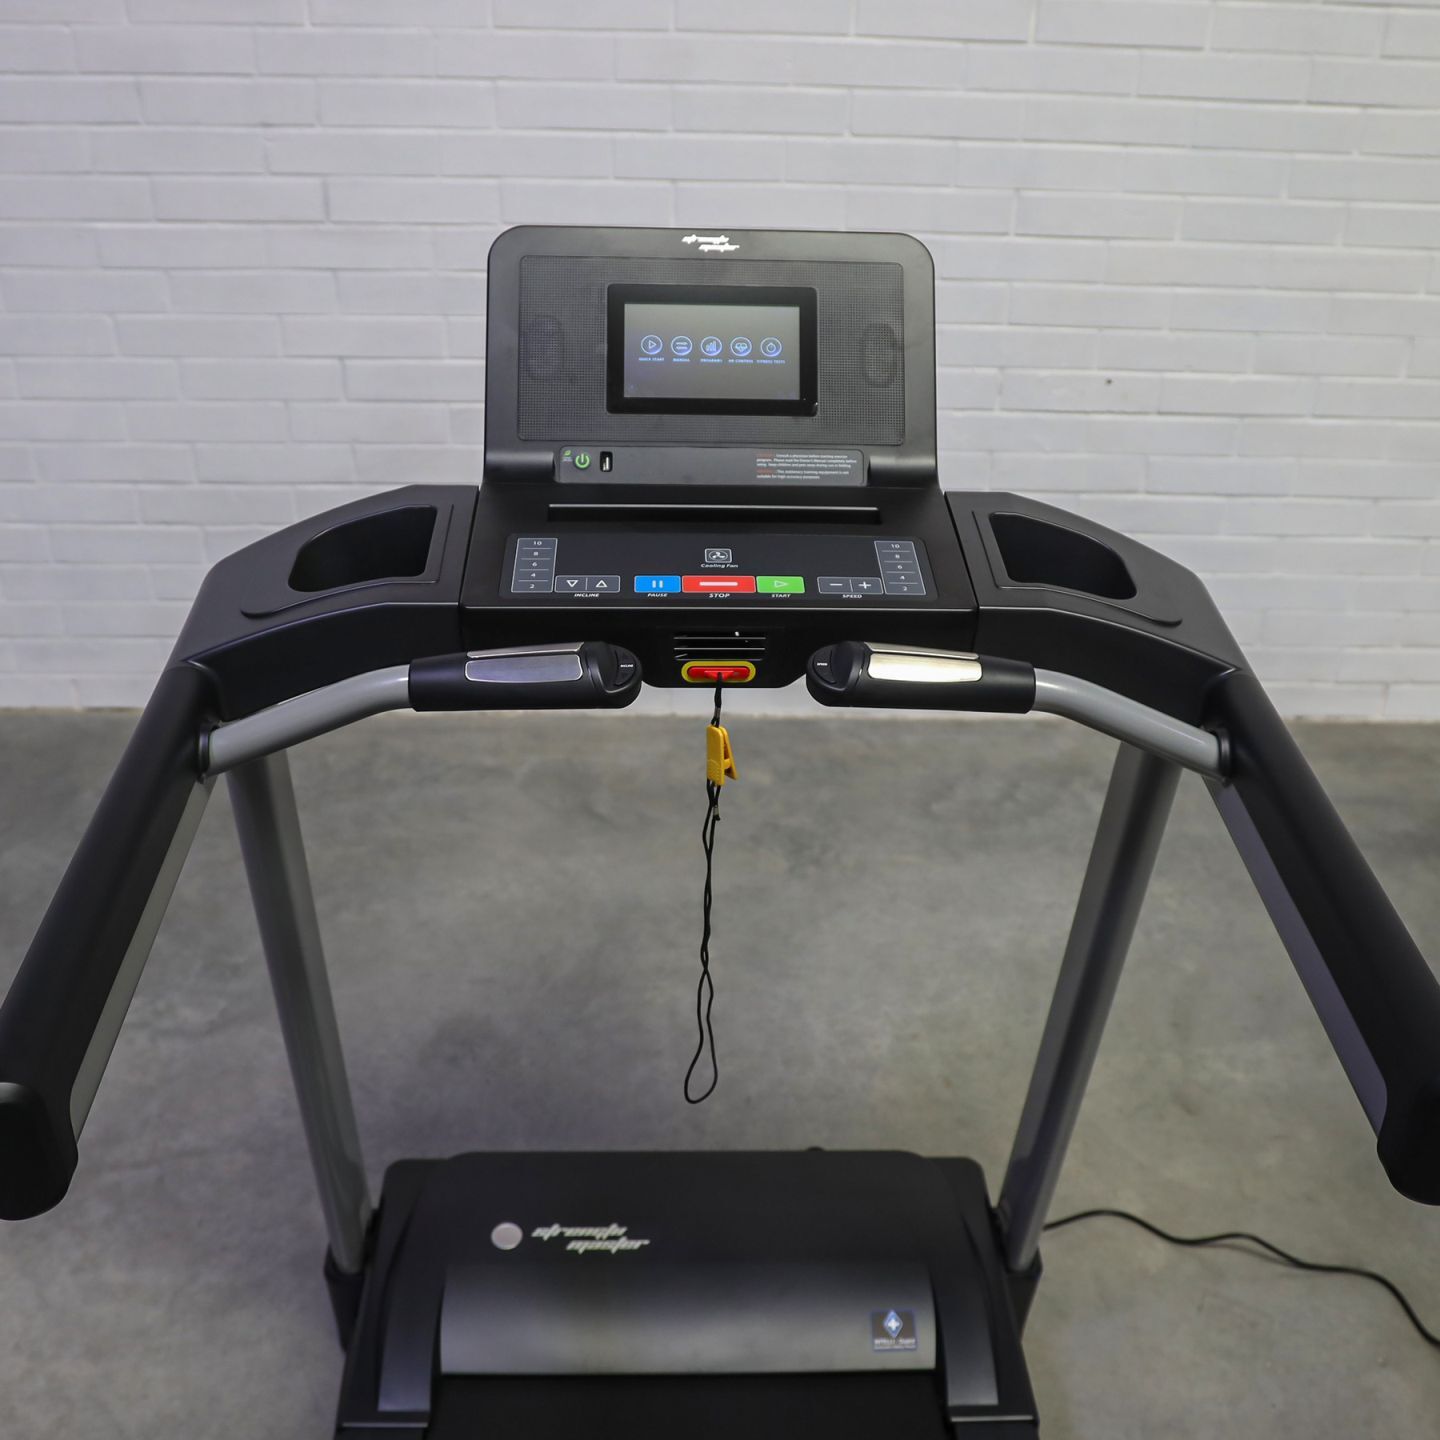 Strength Master TR4000i Treadmill